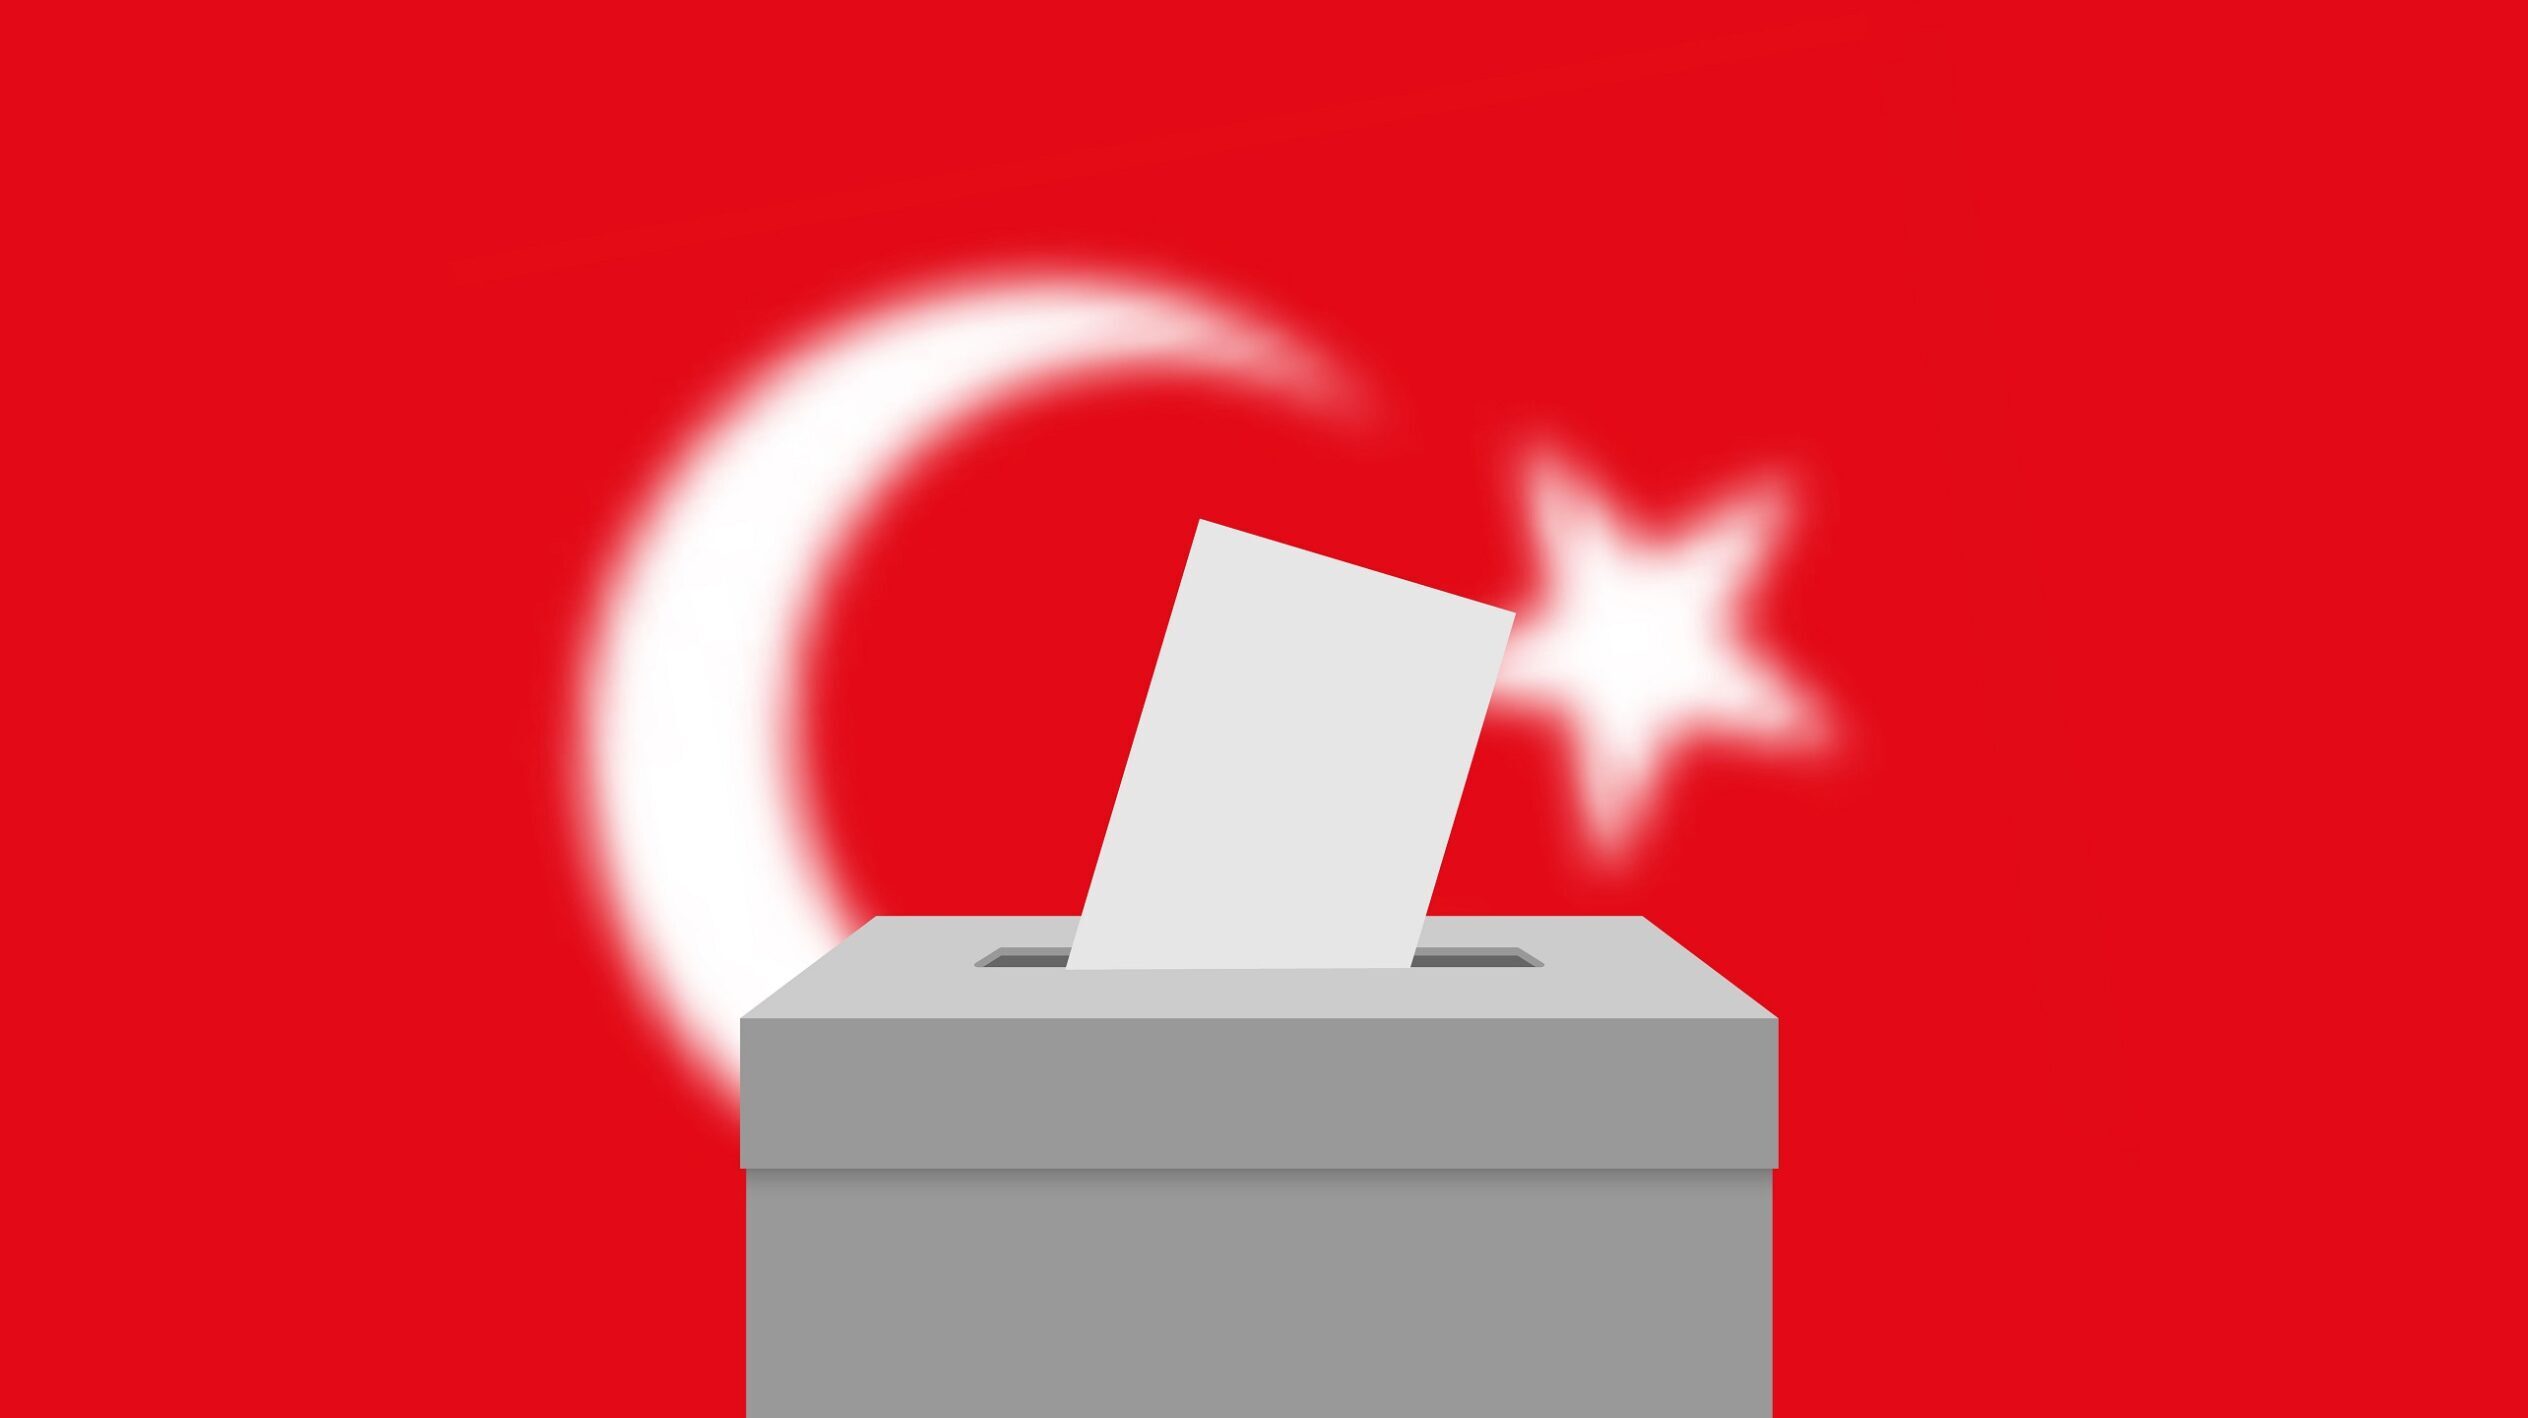 Erdoğan, Kılıçdaroğlu Head to Runoff in Turkish Presidential Election